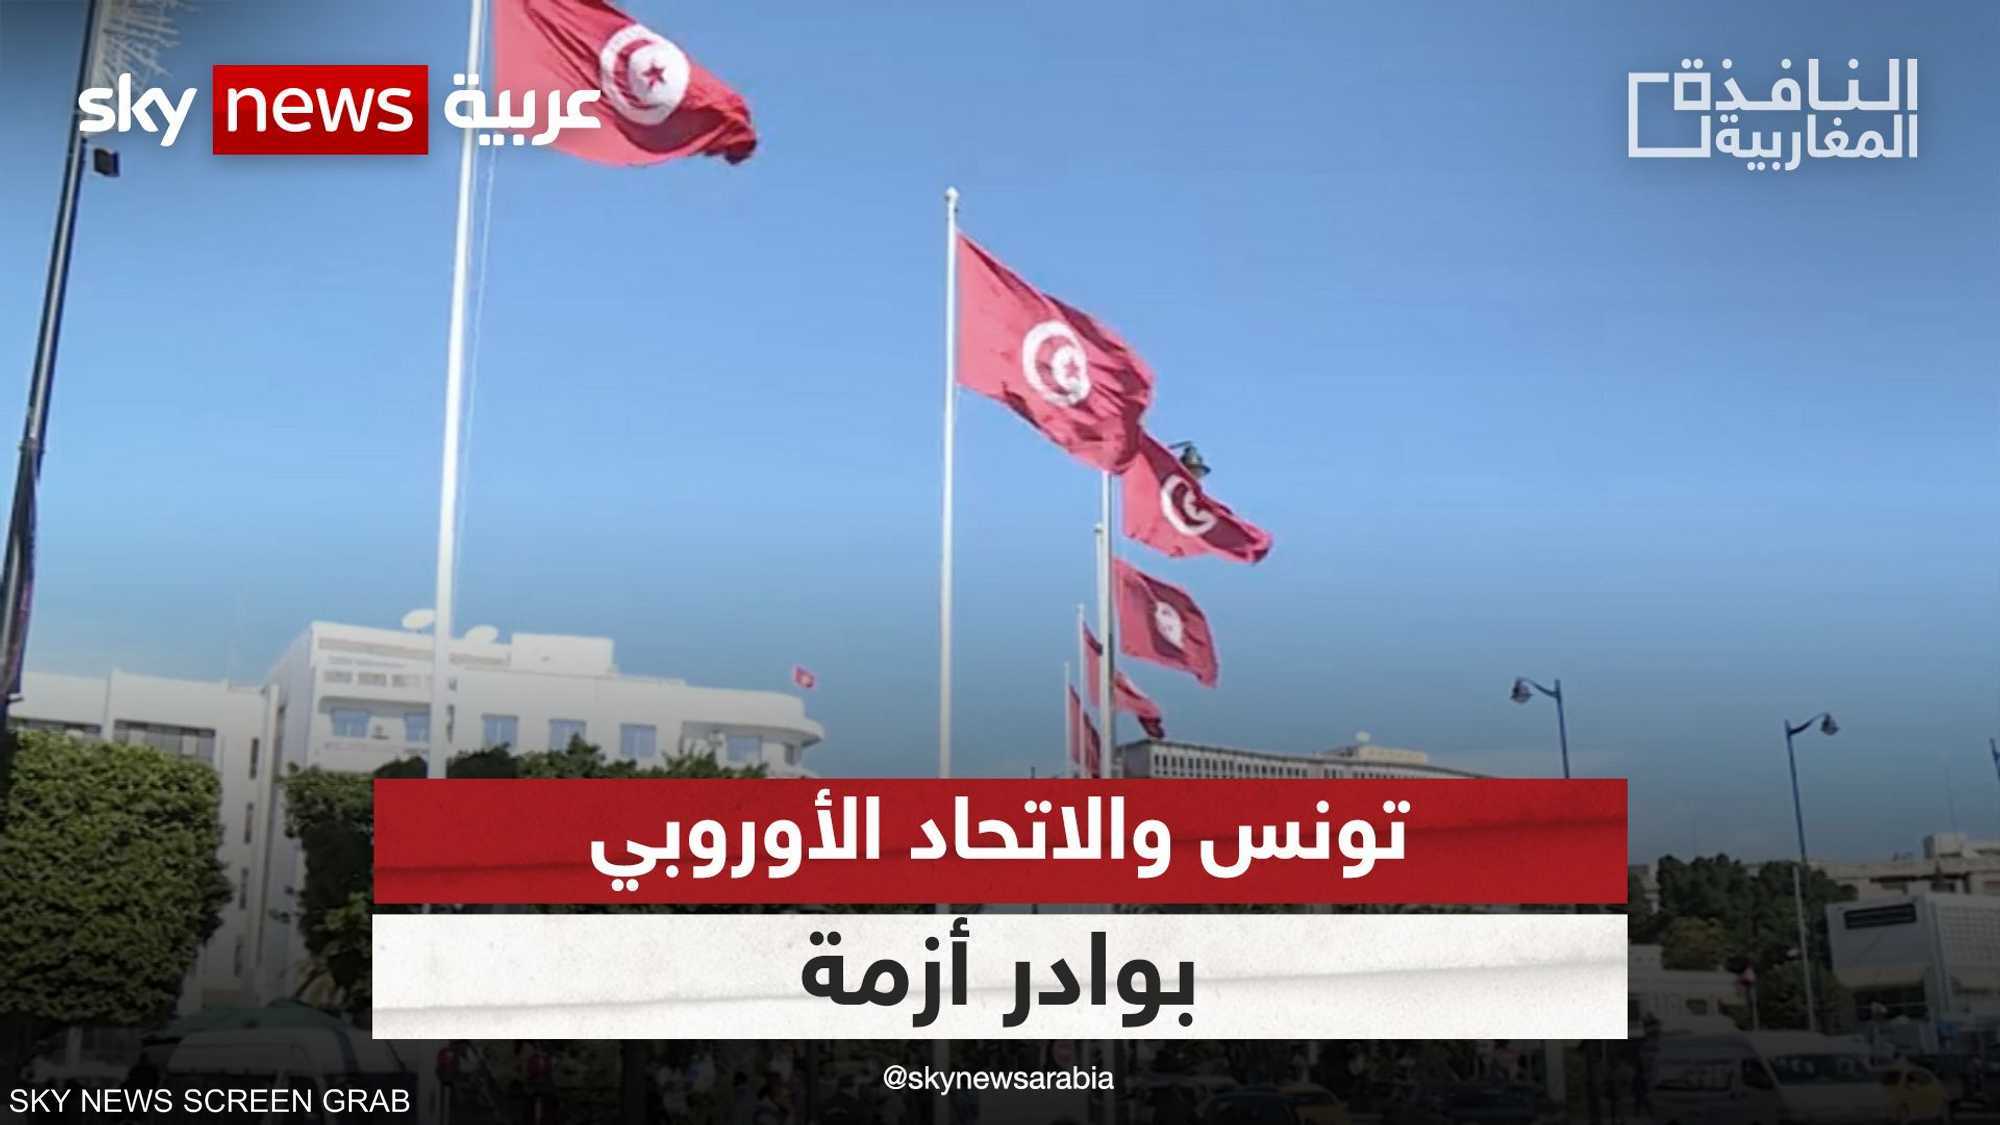 تونس: تصريحات الاتحاد الأوروبي مبالغ فيها